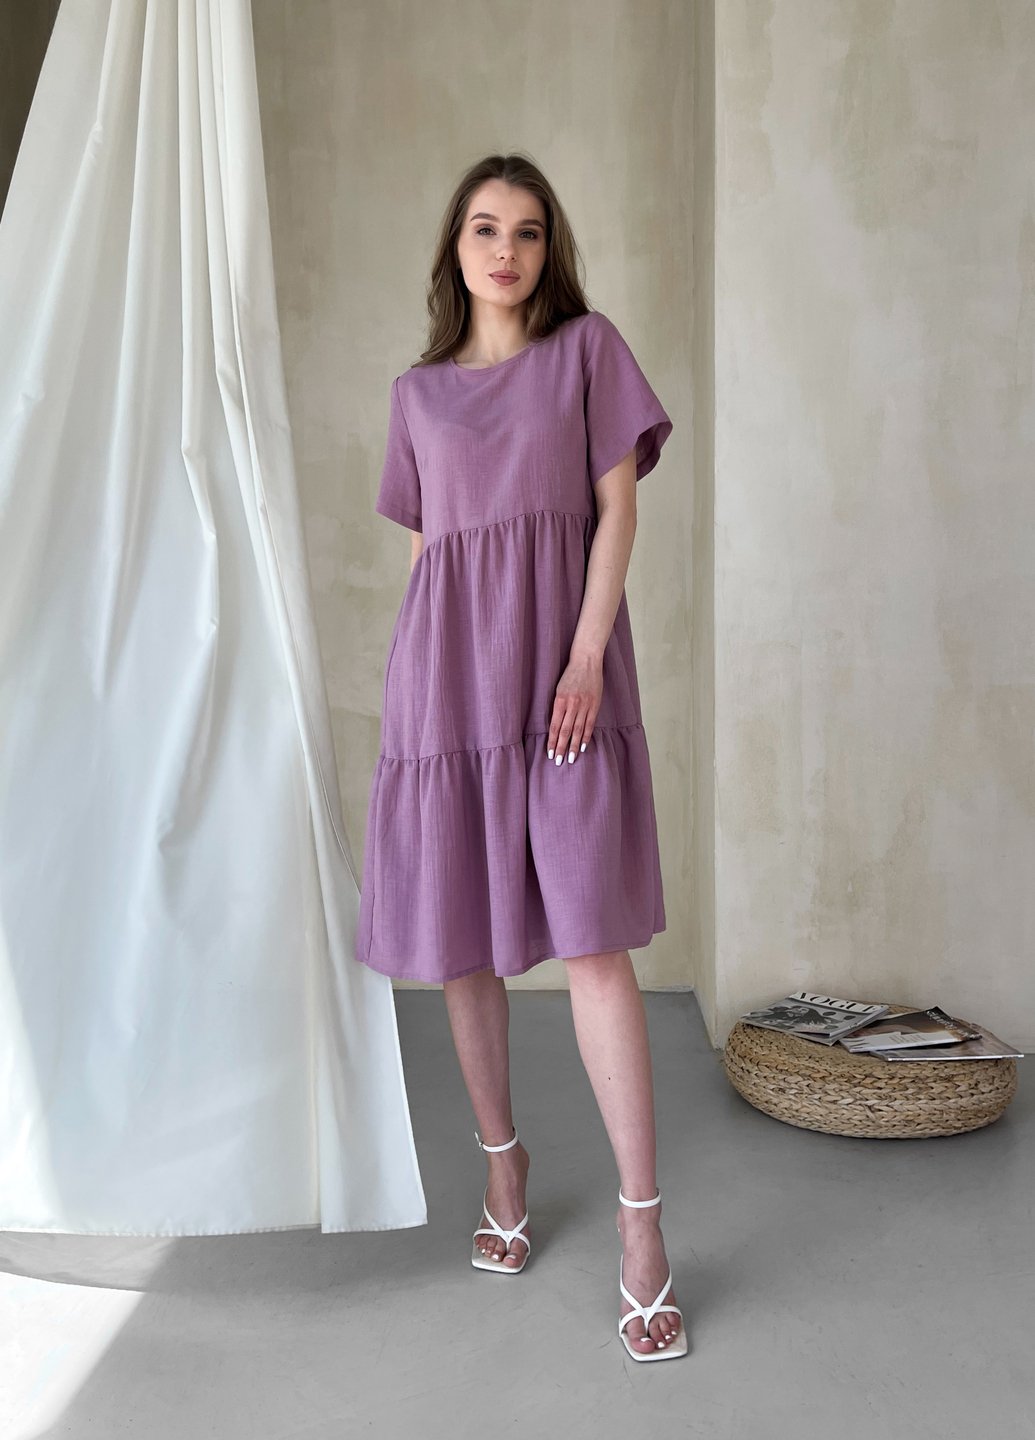 Купить Женское платье до колена однотонное с коротким рукавом из льна розовое Merlini Сесто 700000162, размер 42-44 (S-M) в интернет-магазине